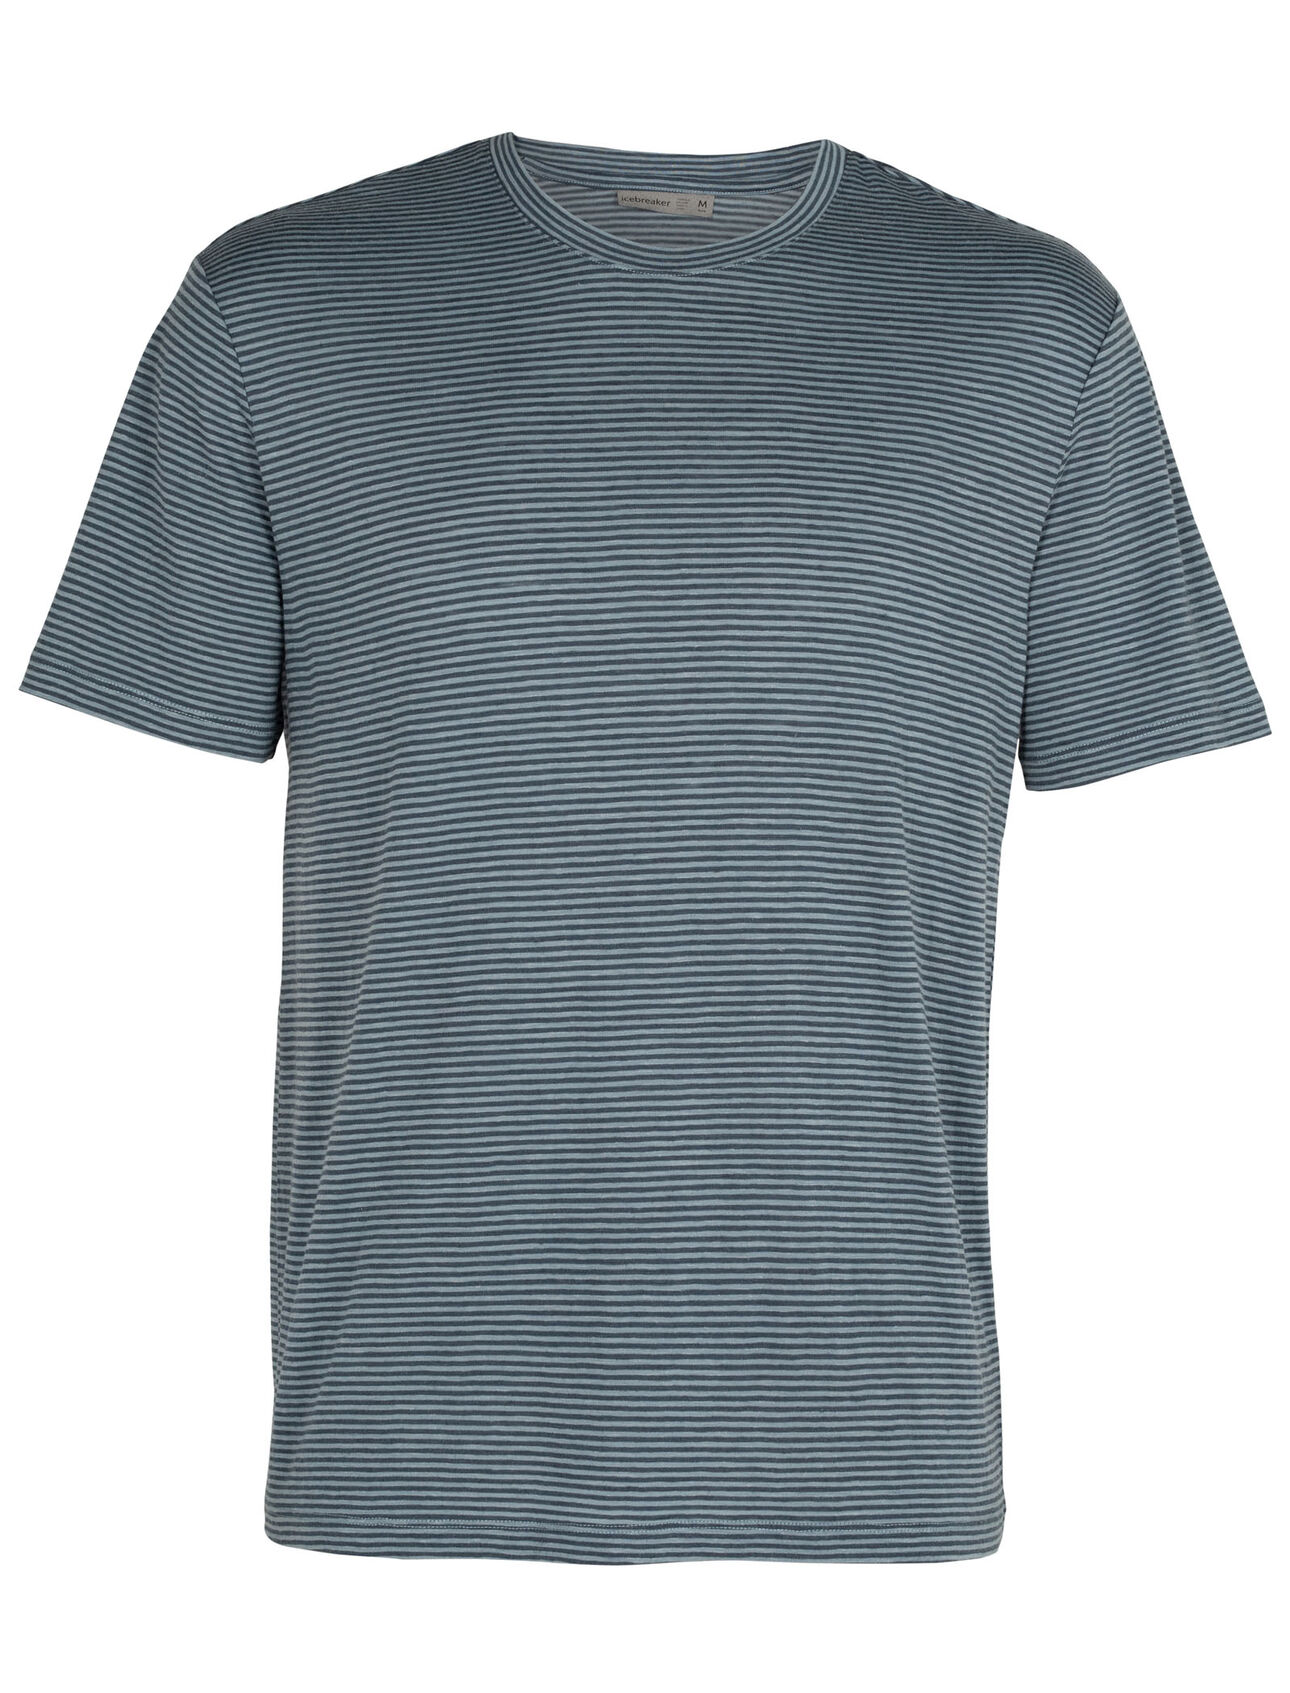 Merino Dowlas Short Sleeve Crewe Stripe T-Shirt